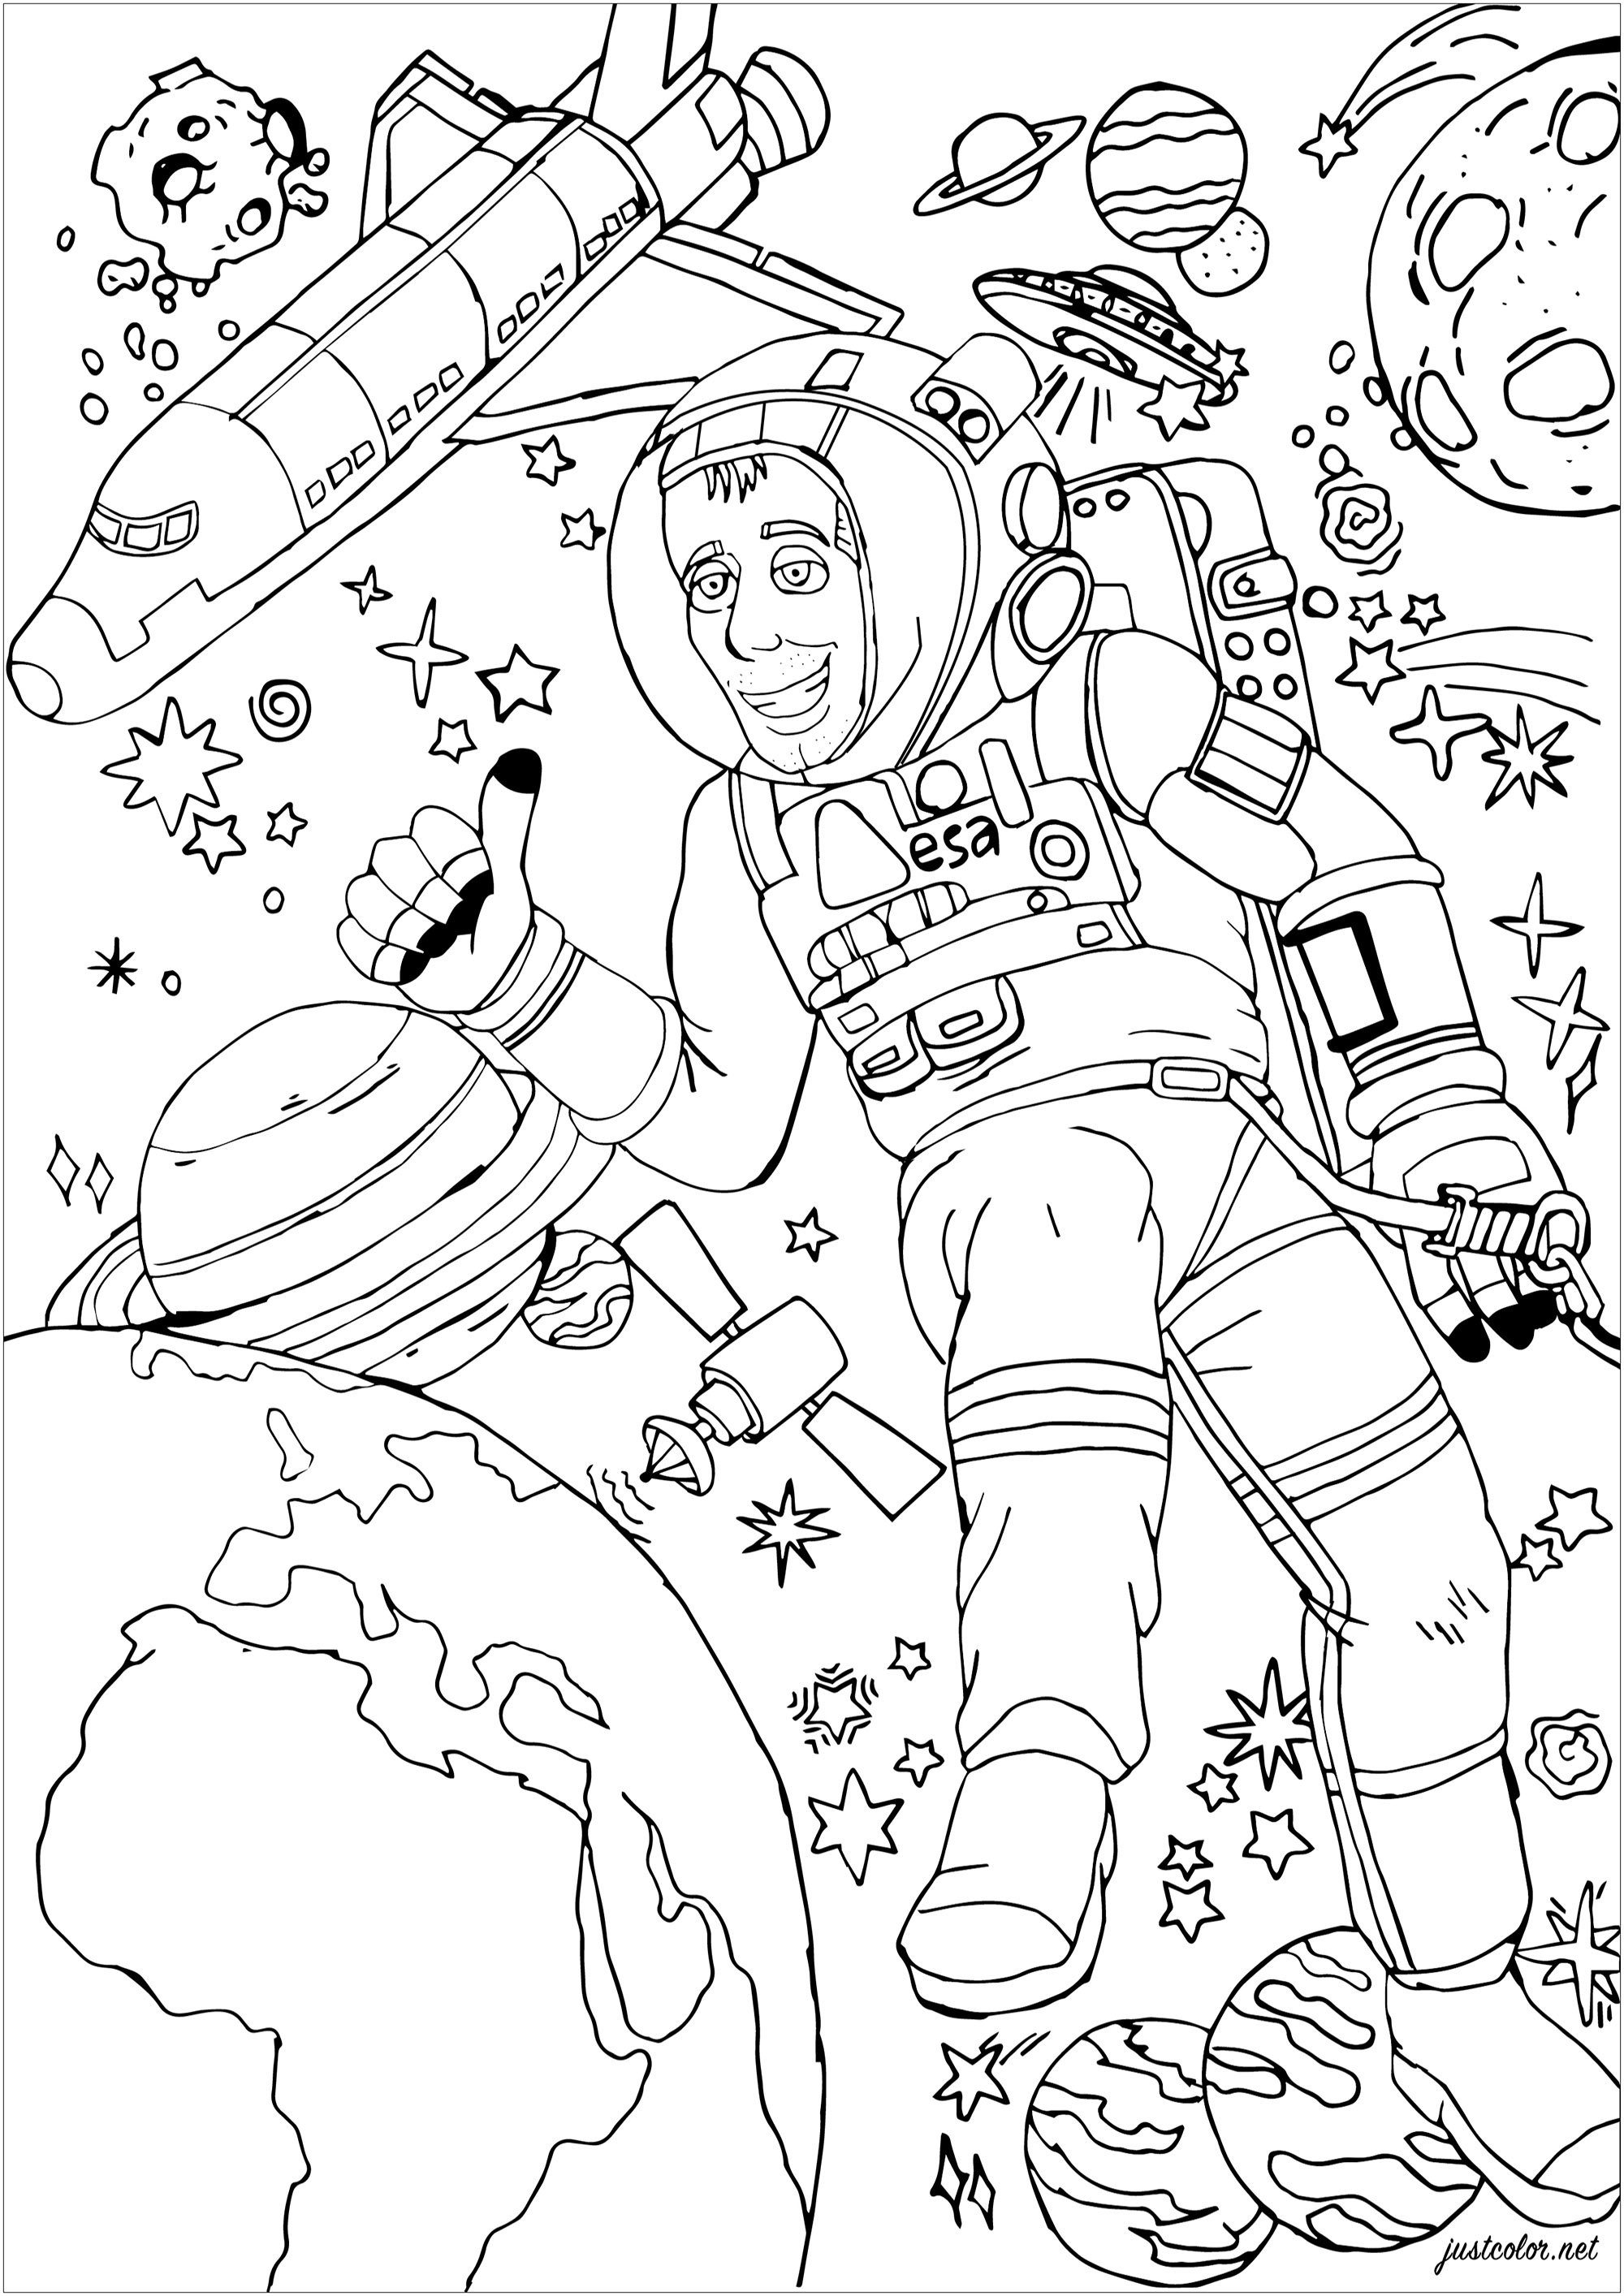 L'astronaute Thomas Pesquet lors d'une sortie dans l'espace. La Terre, la Lune et diverses planètes sont à colorier, ainsi qu'une navette spatiale, Artiste : Morgan